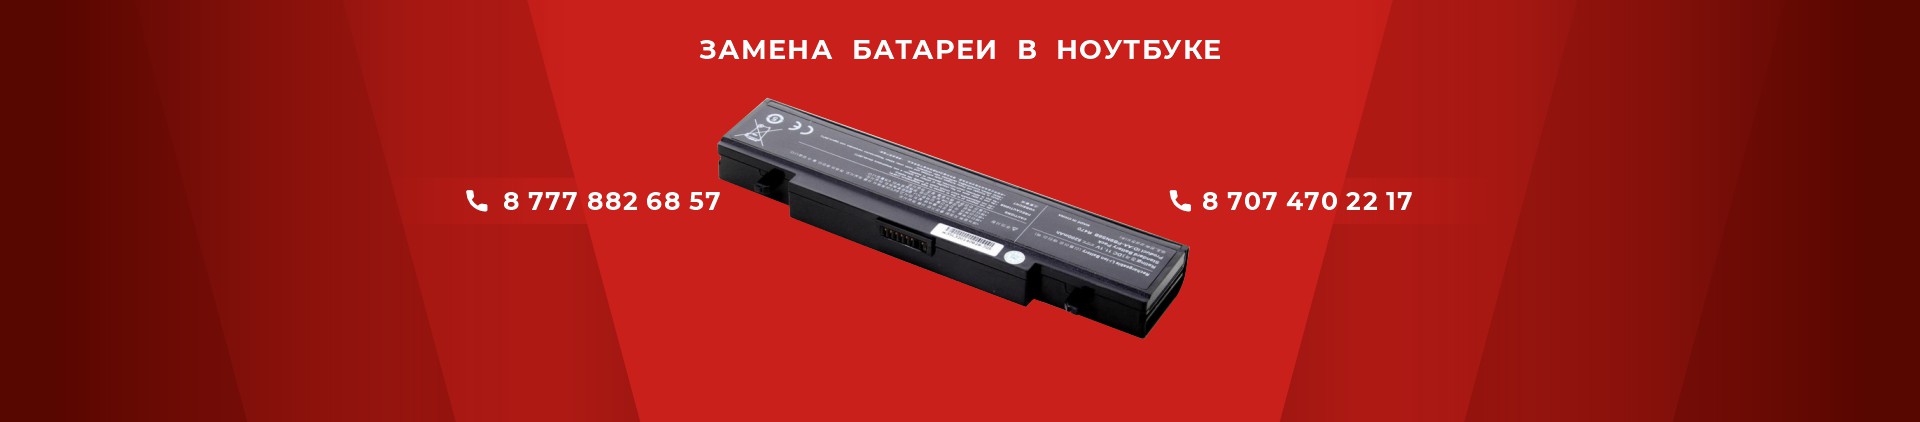 Замена батареи в ноутбуке Астана